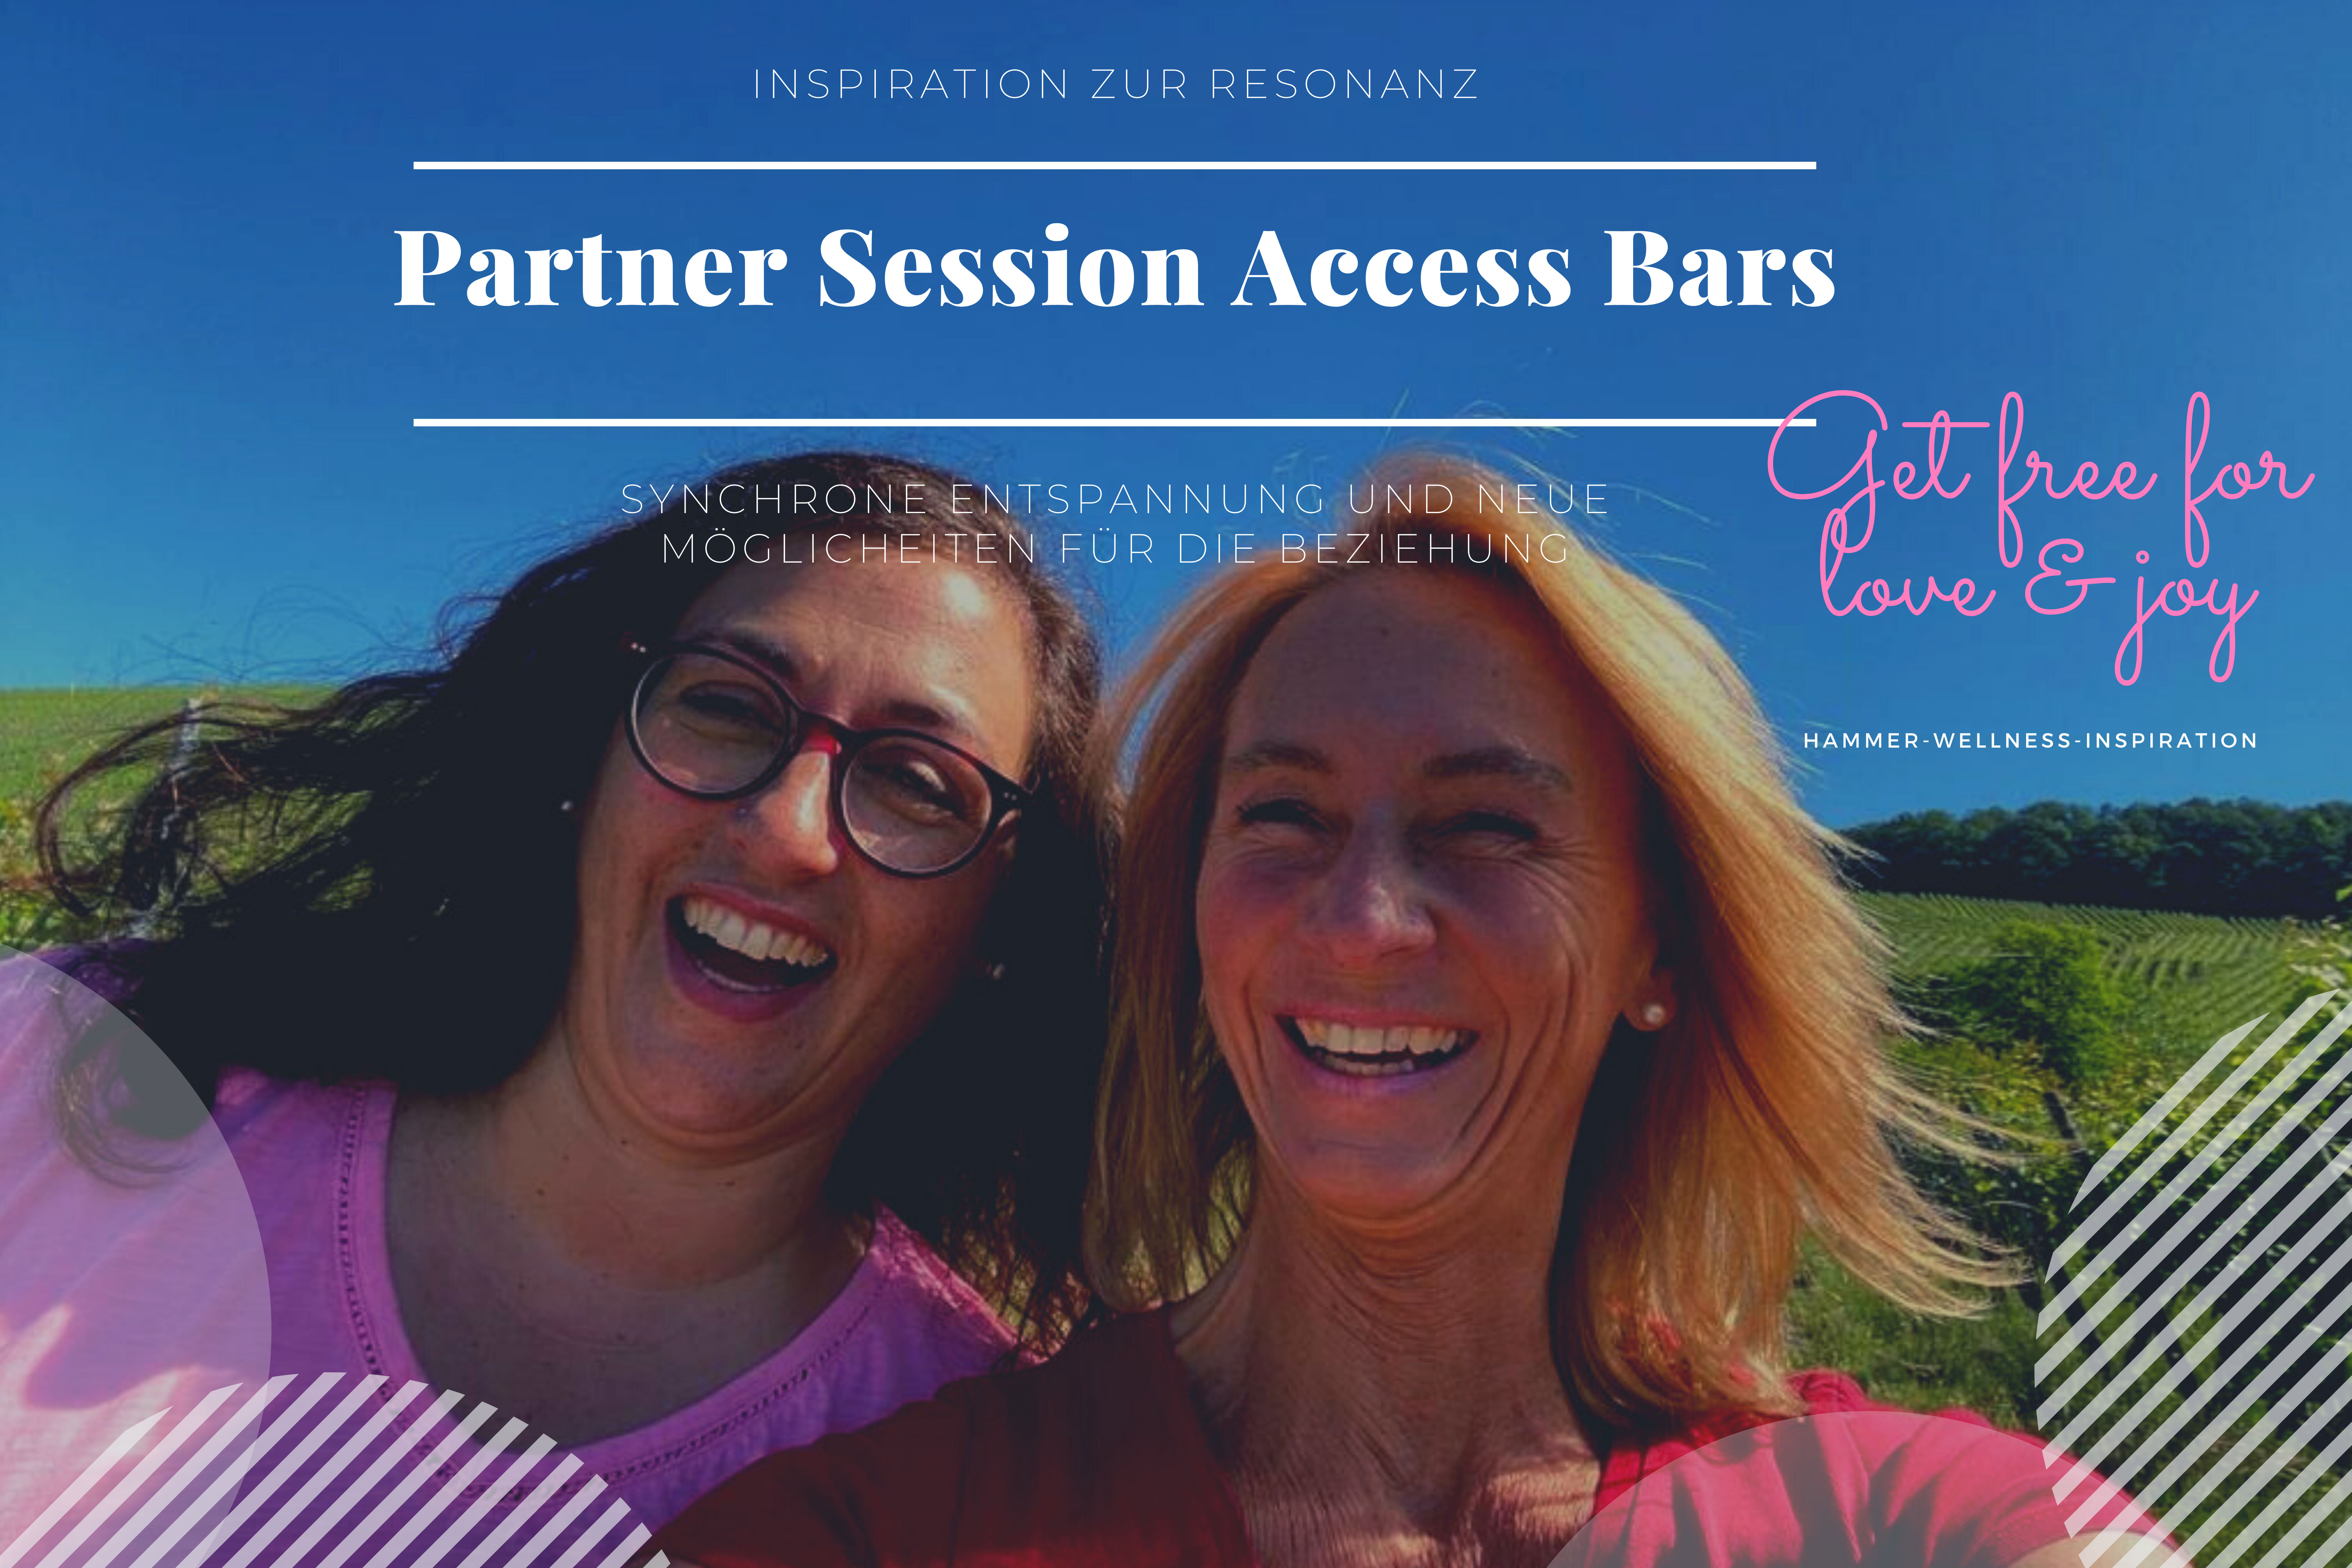 Partner Session Access Bars synchrone Entspannung in Stuttgart - Gedanken und Erwartungen raus und Raum für Dankbarkeit, Liebe und neue Möglichkeiten für die Beziehung schaffen - Hammer- Wellness Eheberatung ohne Worte